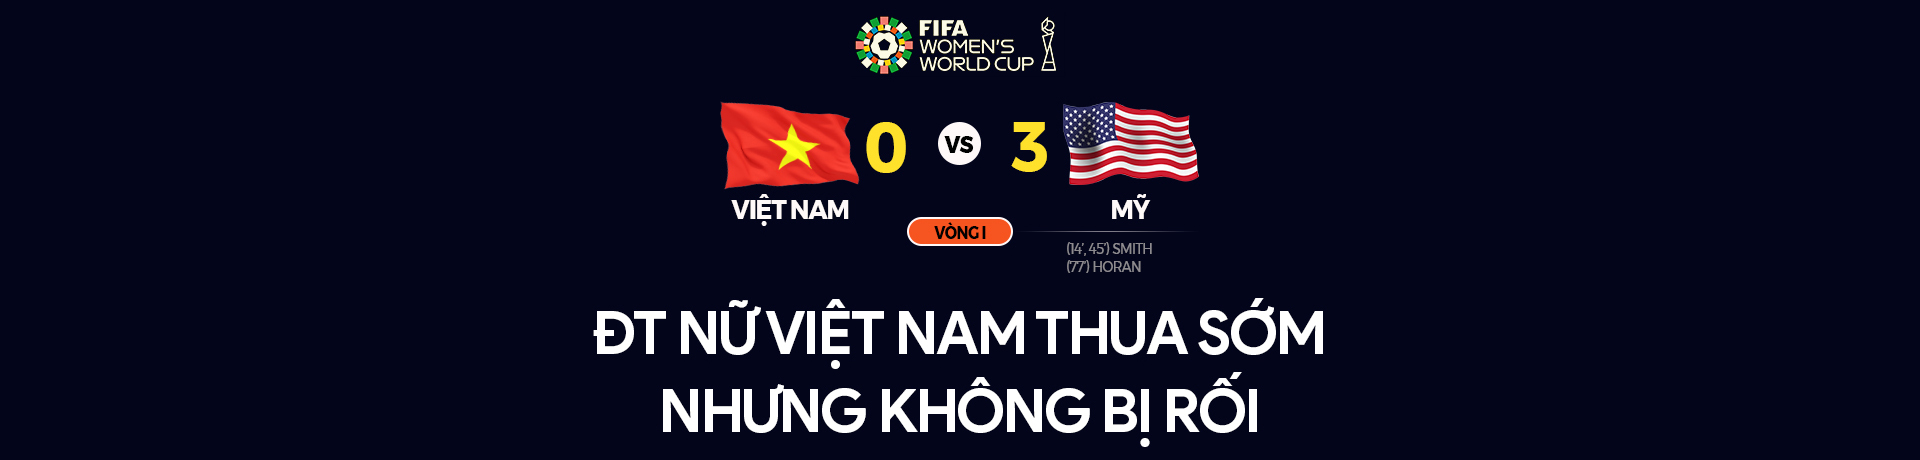 World Cup có quá tầm với ĐT nữ Việt Nam?  - Ảnh 1.